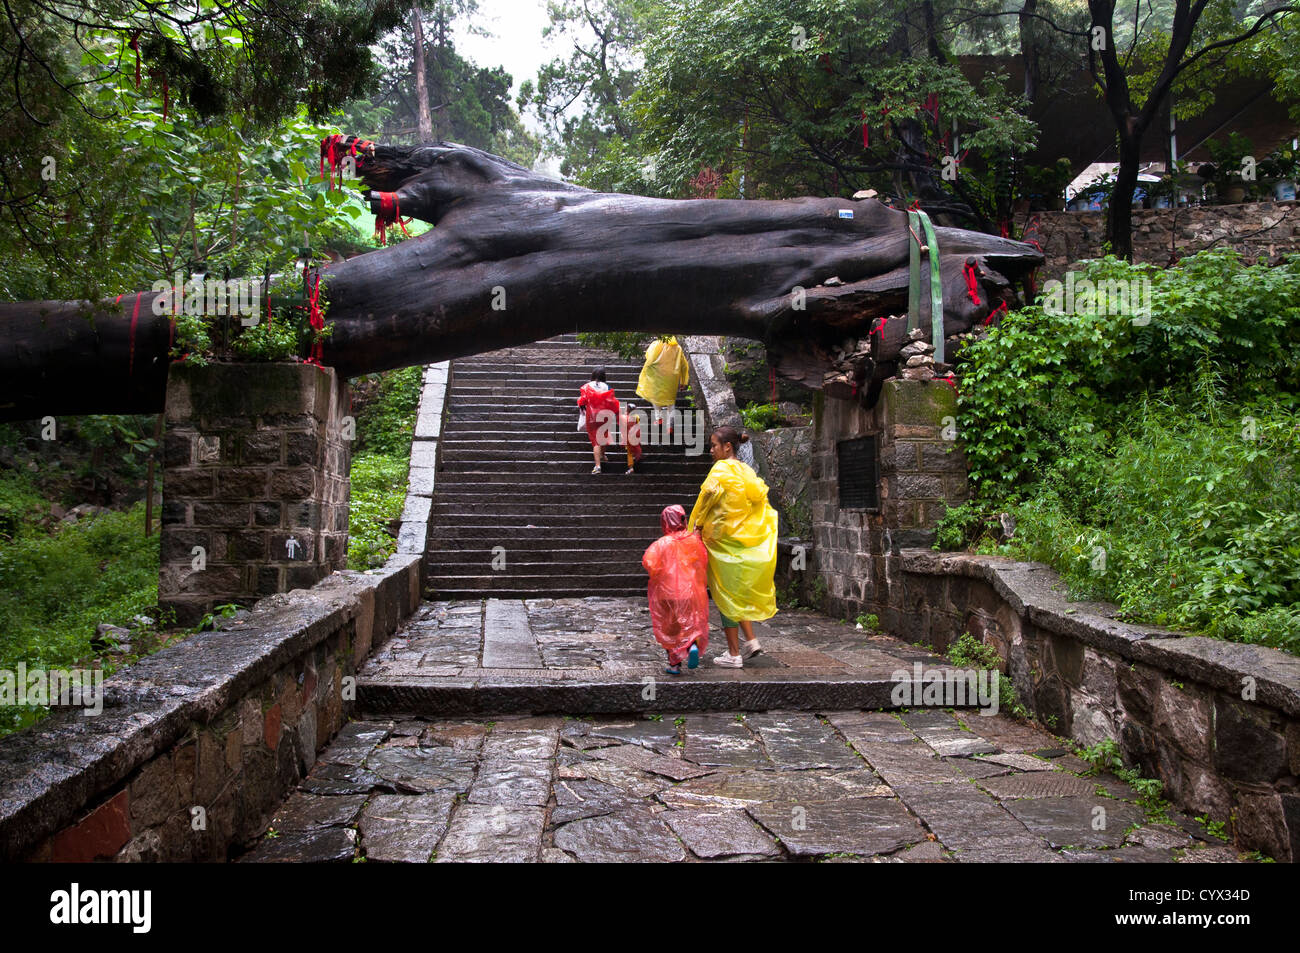 Sleeping Dragon Pagoda Tree, Tai Shan, China Stock Photo